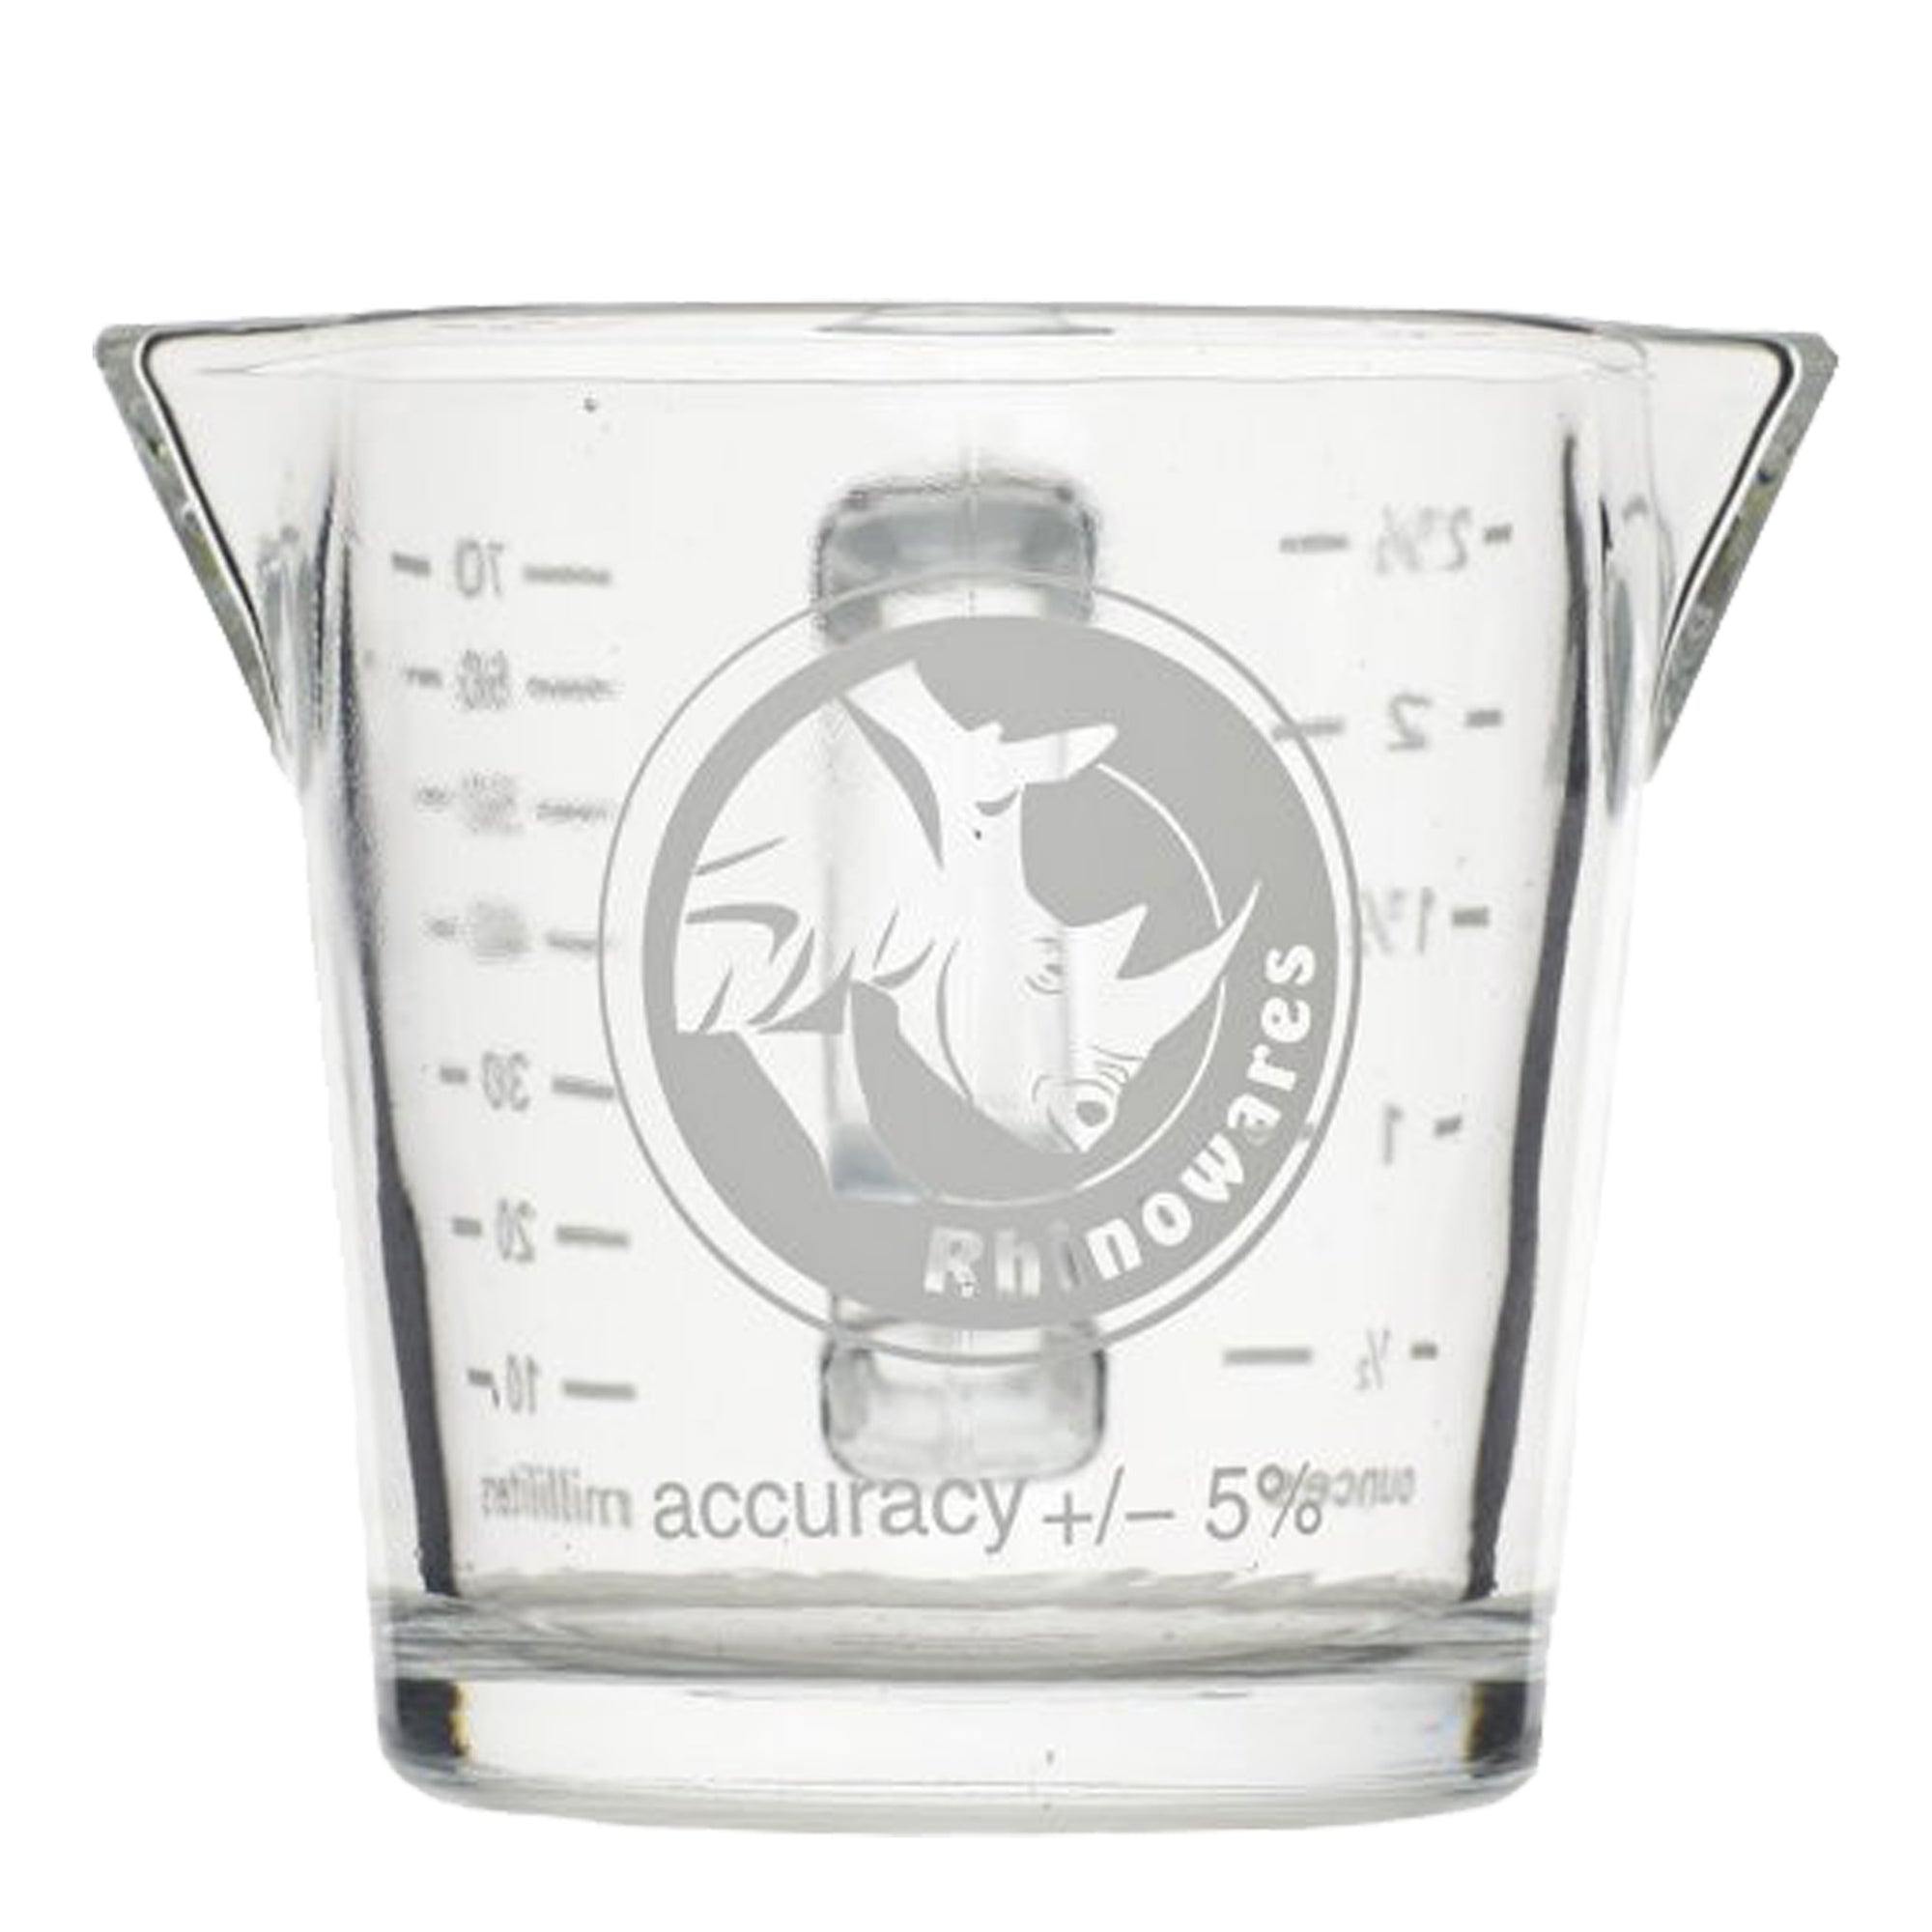 Shot Glass w handle 2.4oz / 70ml - Rhinowares - Espresso Gear